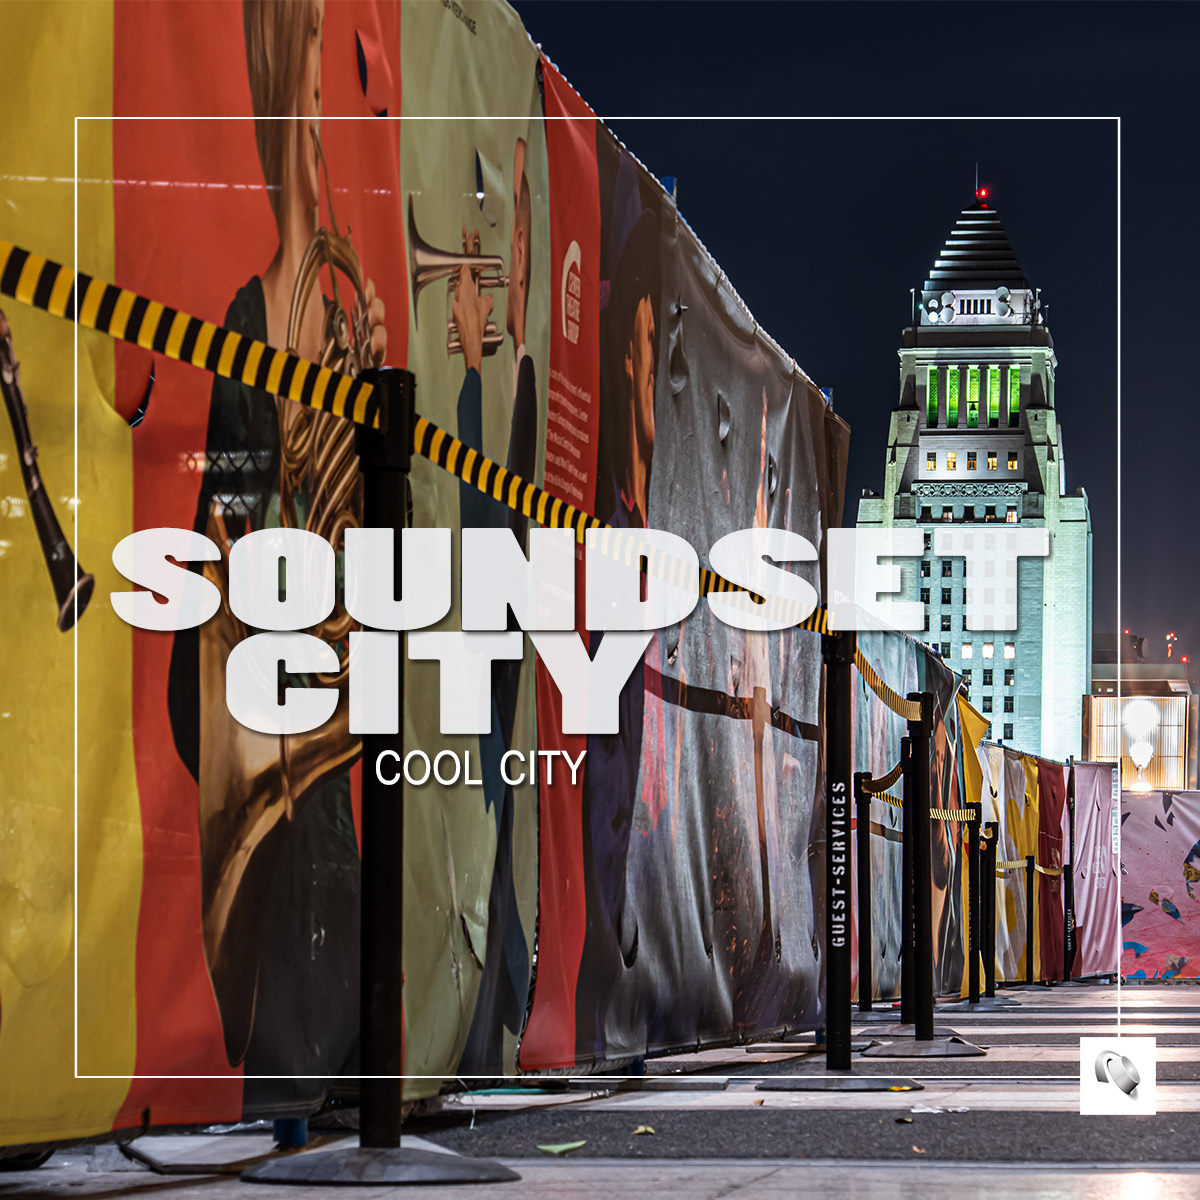 SOUNDSET CITY-Cool City